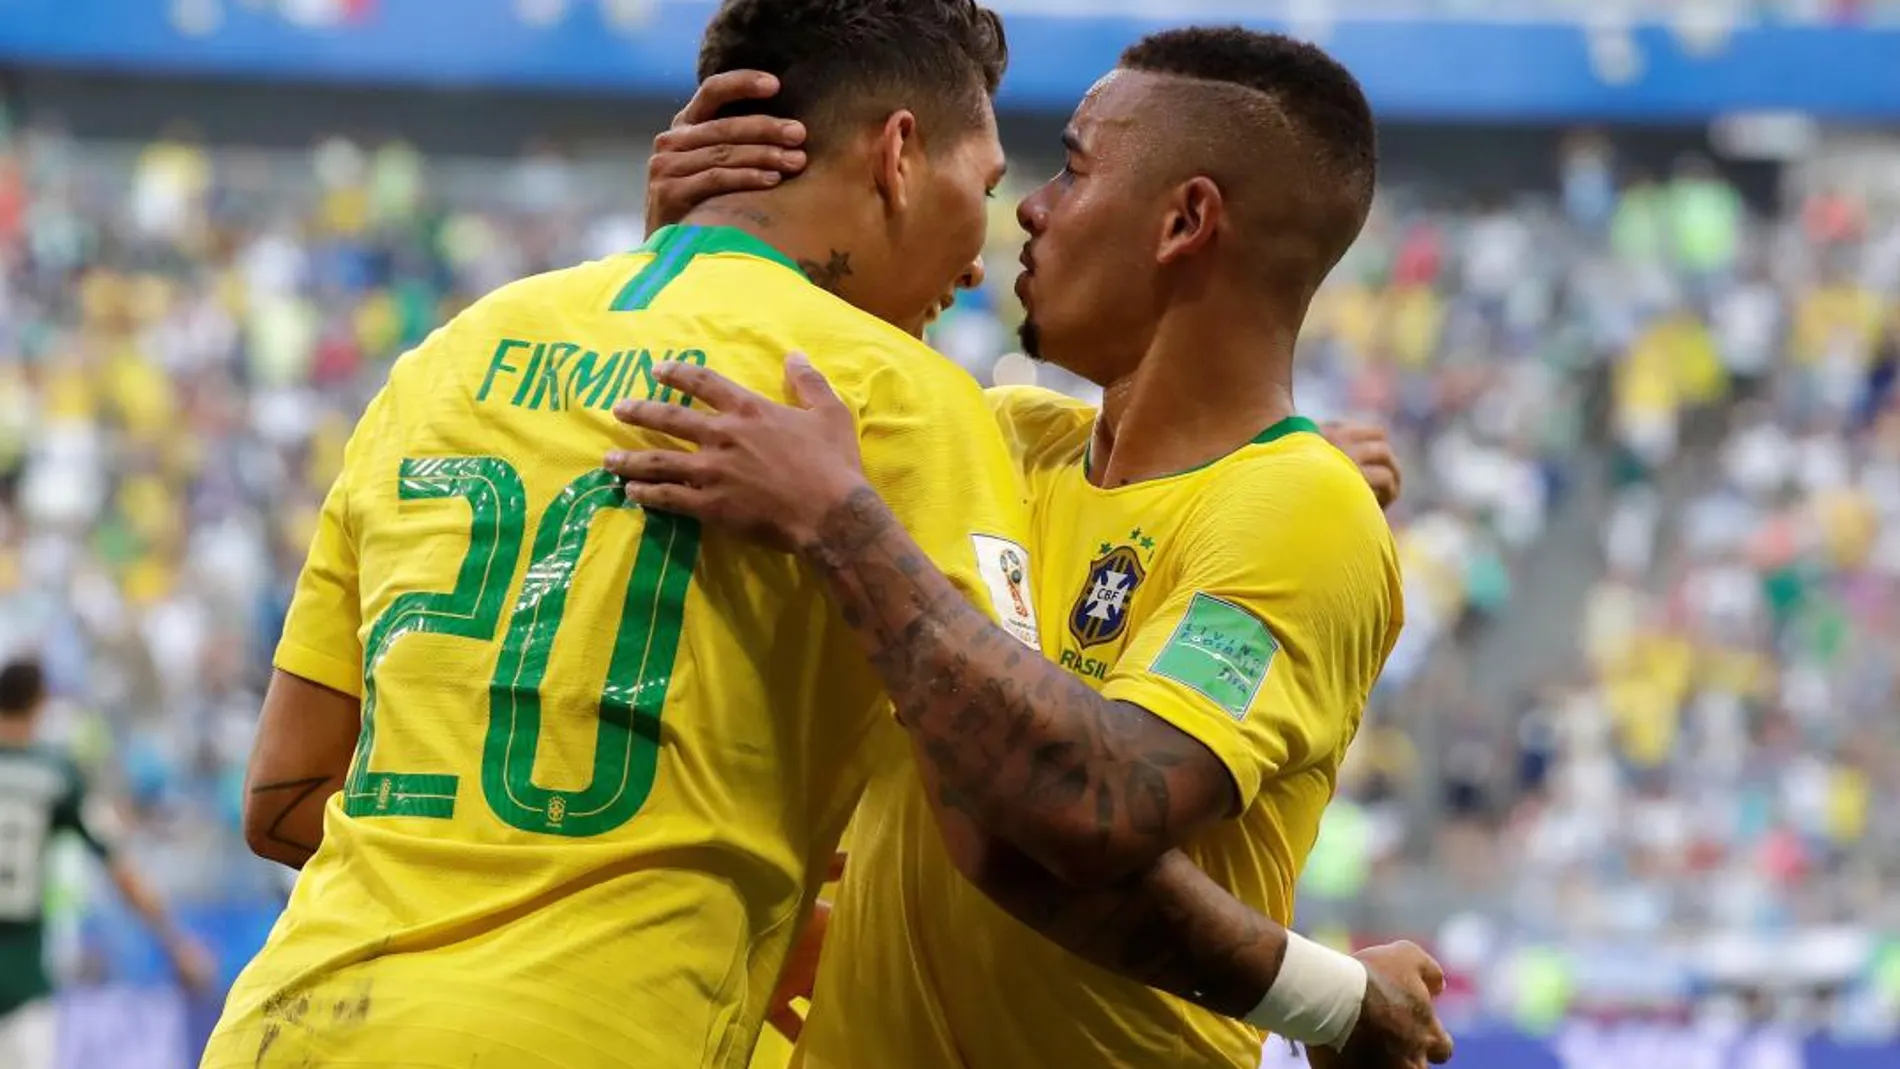 El delantero brasileño Firmino celebra tras marcar el 2-0 durante el partido Brasil-México. EFE/Sebastião Moreira